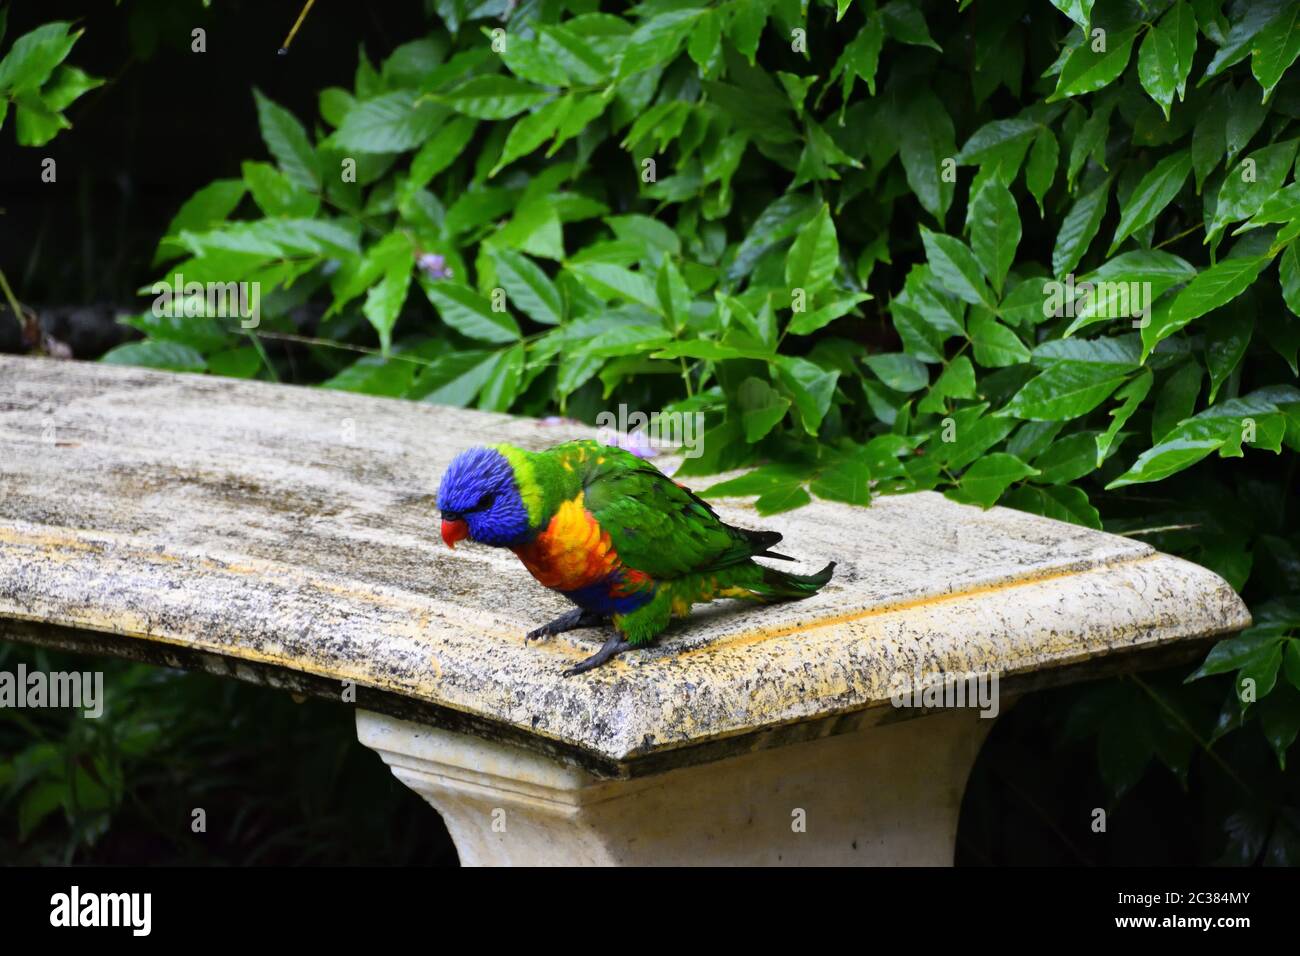 A wild Rainbow Lorikeet on a stone seat Stock Photo